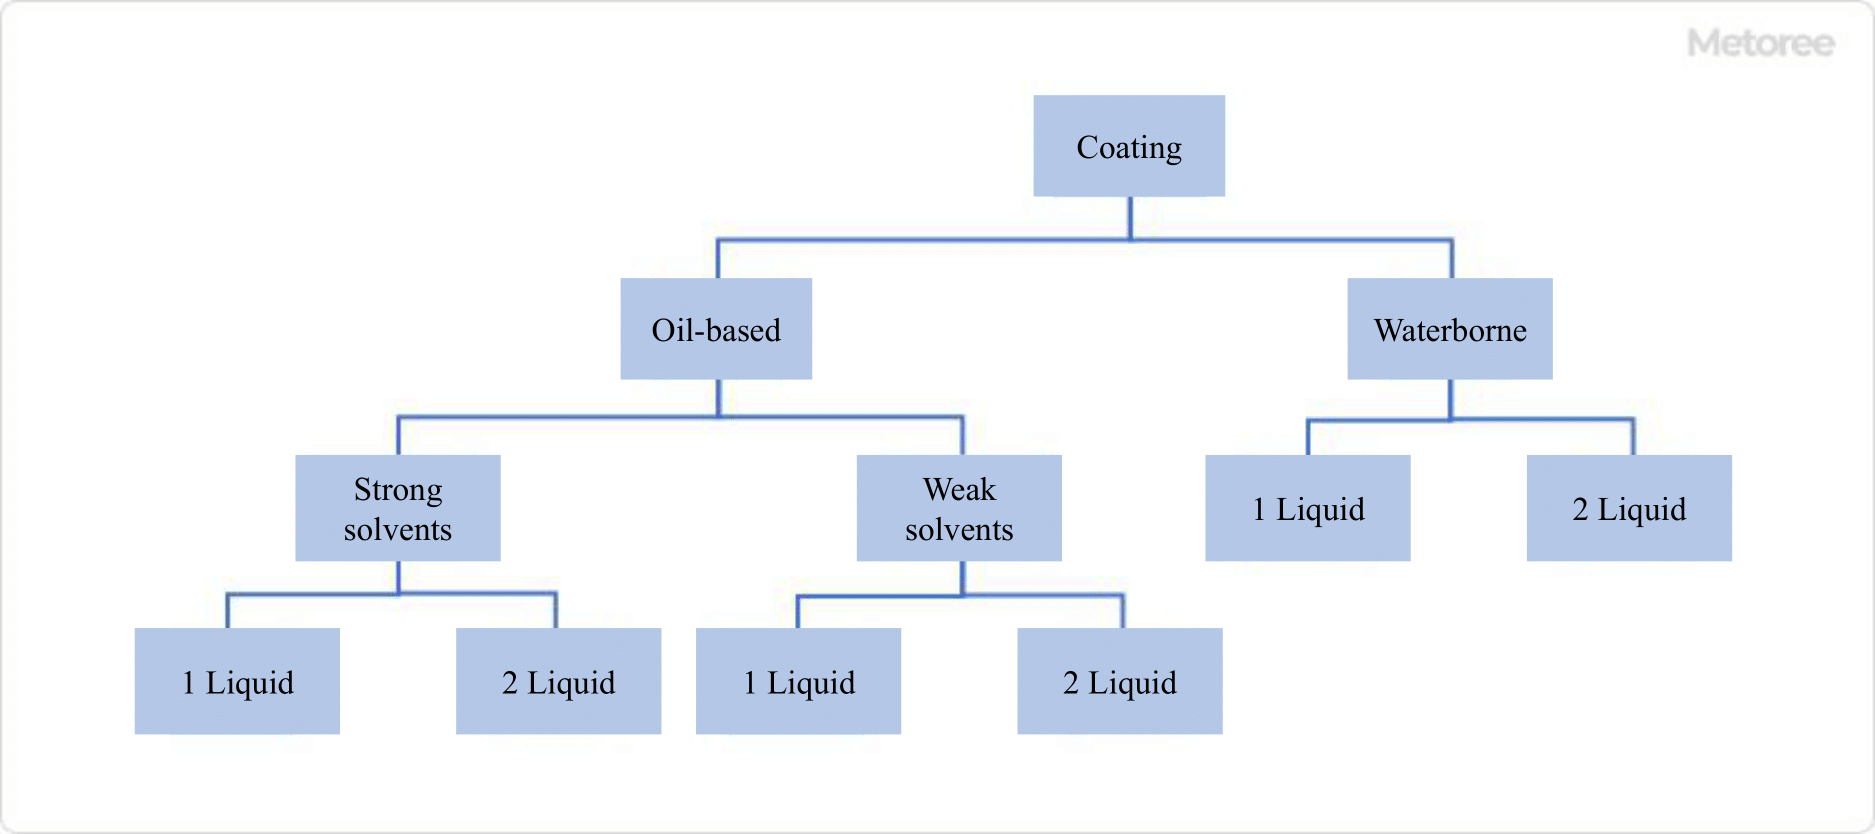 Figure 3. Classification of paints